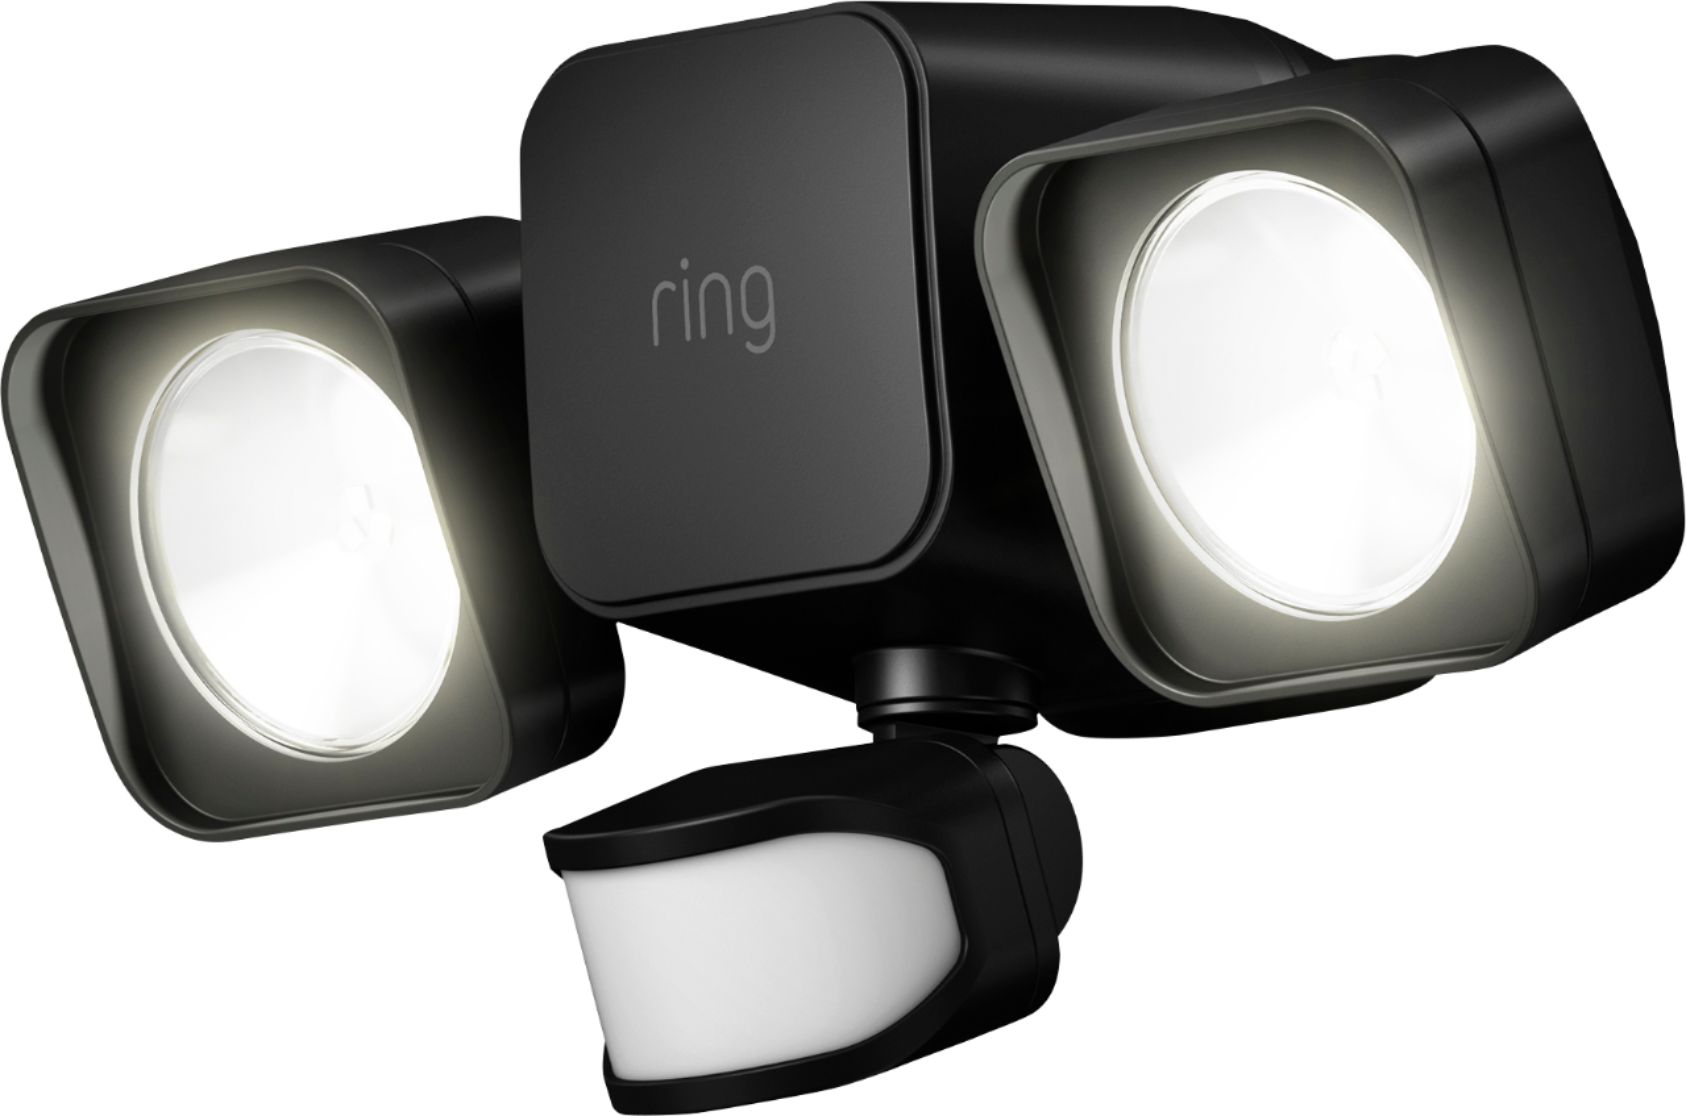 Ring Smart Lighting Floodlight Battery Powered Black 5B21S8BEN0 Best Buy